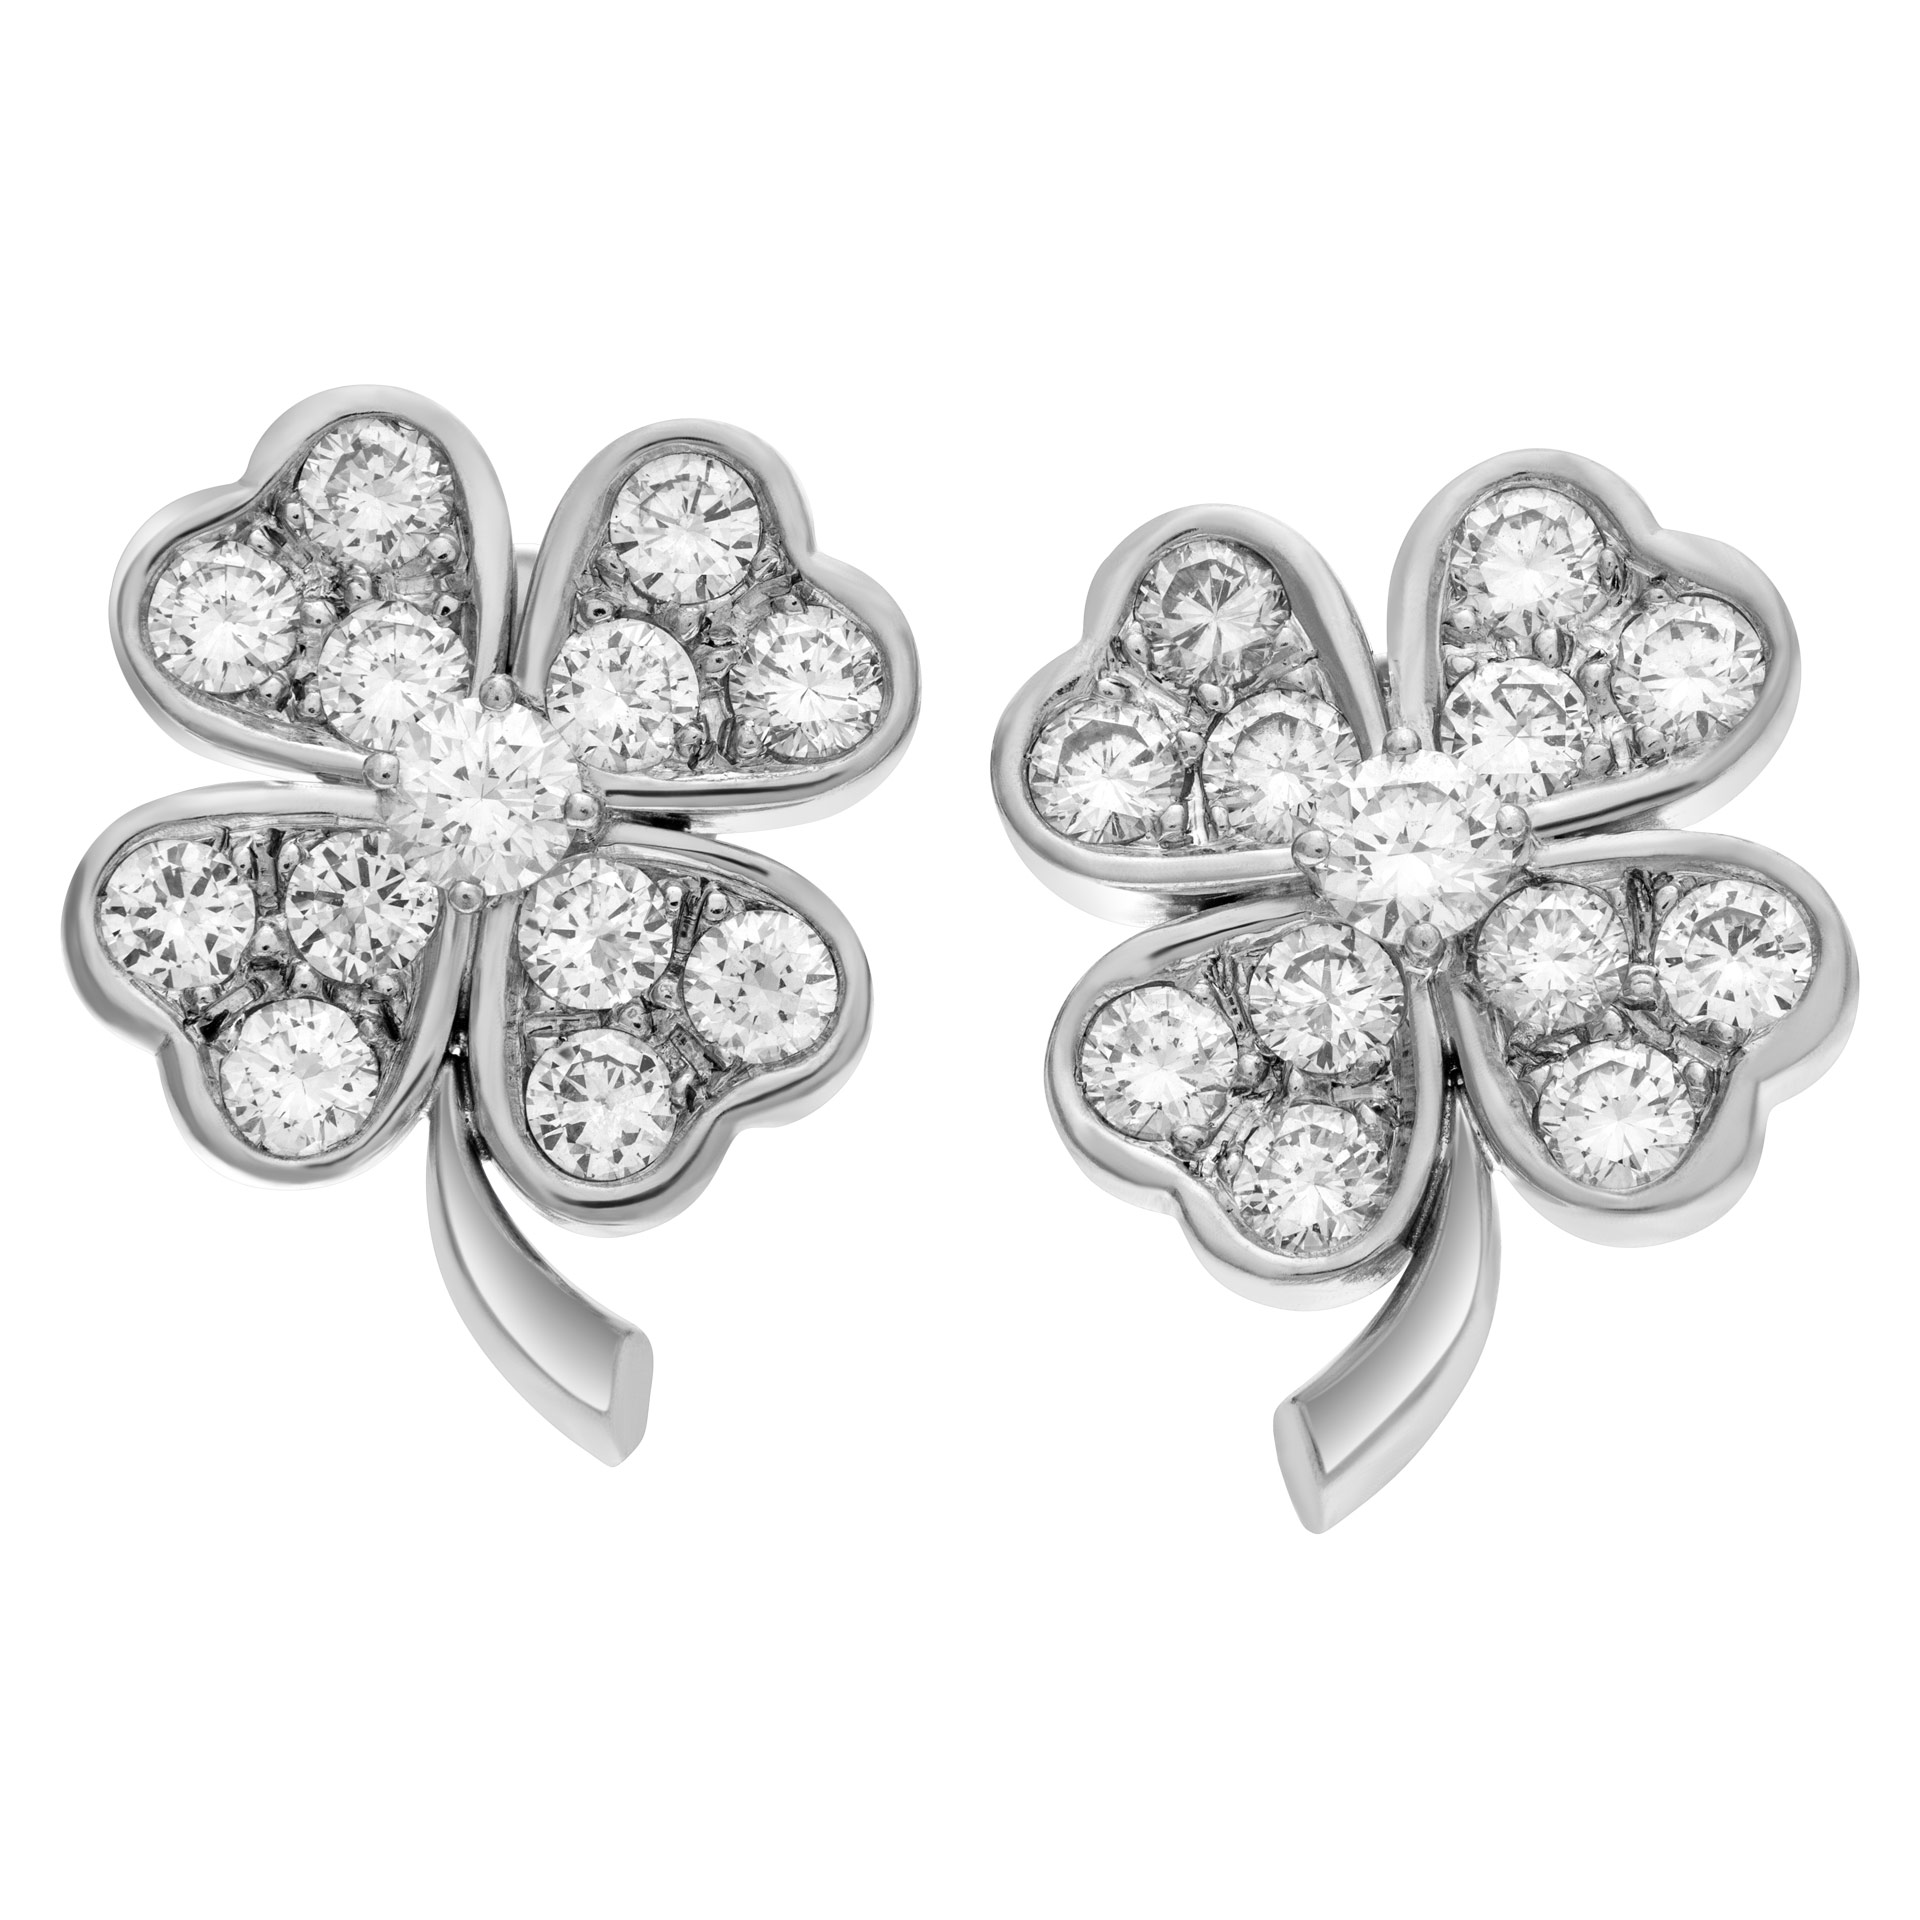 Diamond clover earrings in 18k white gold